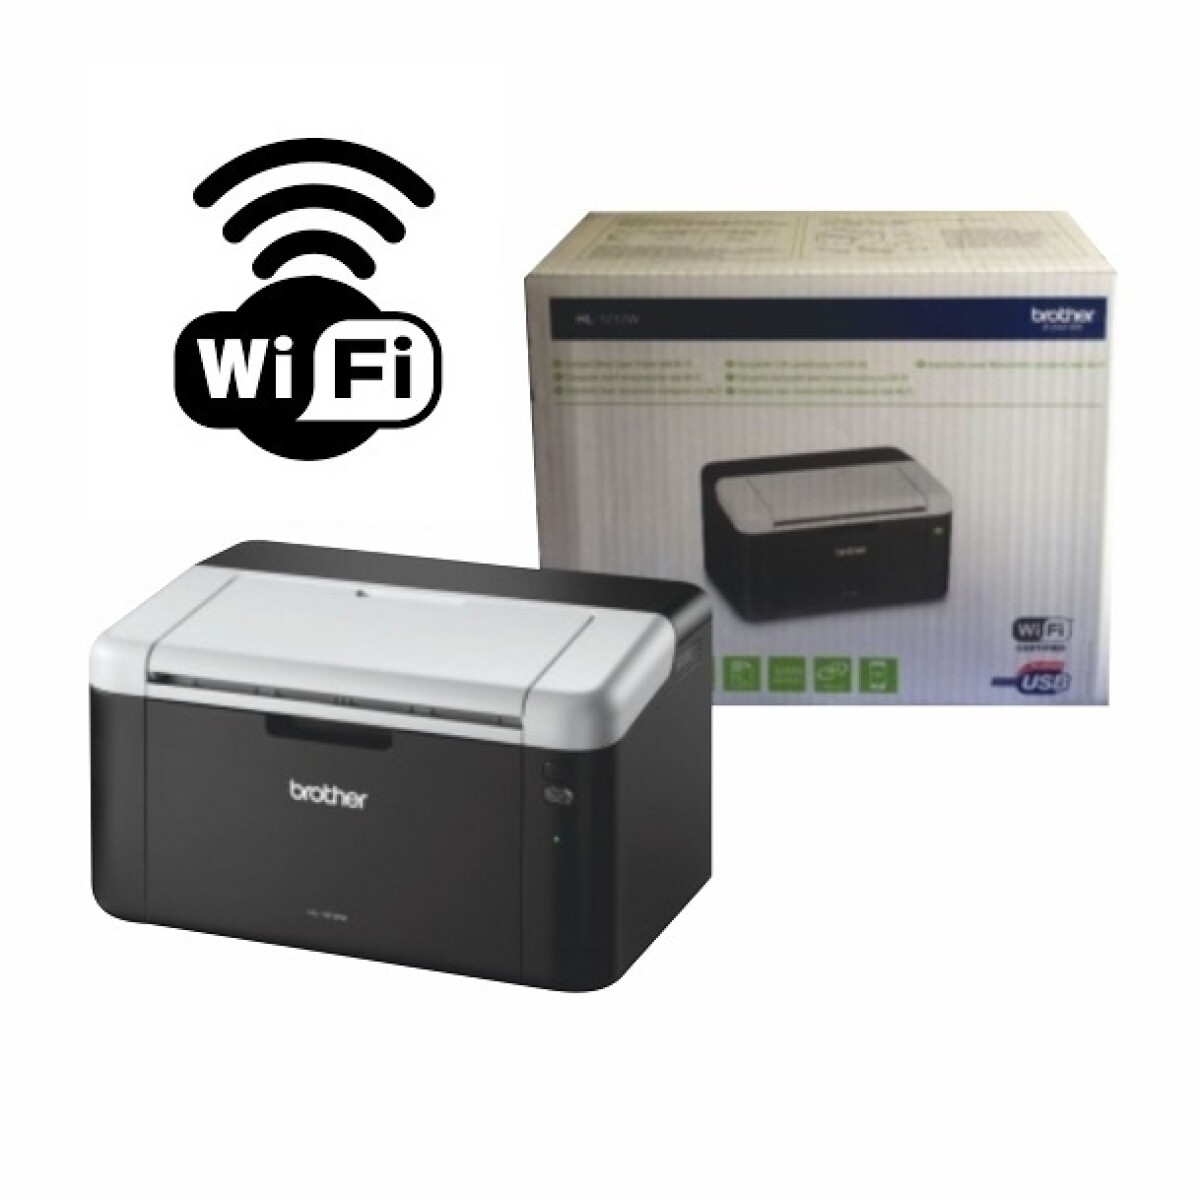 Impresora Laser Brother HL-1212 Wifi + Toner Original - 001 